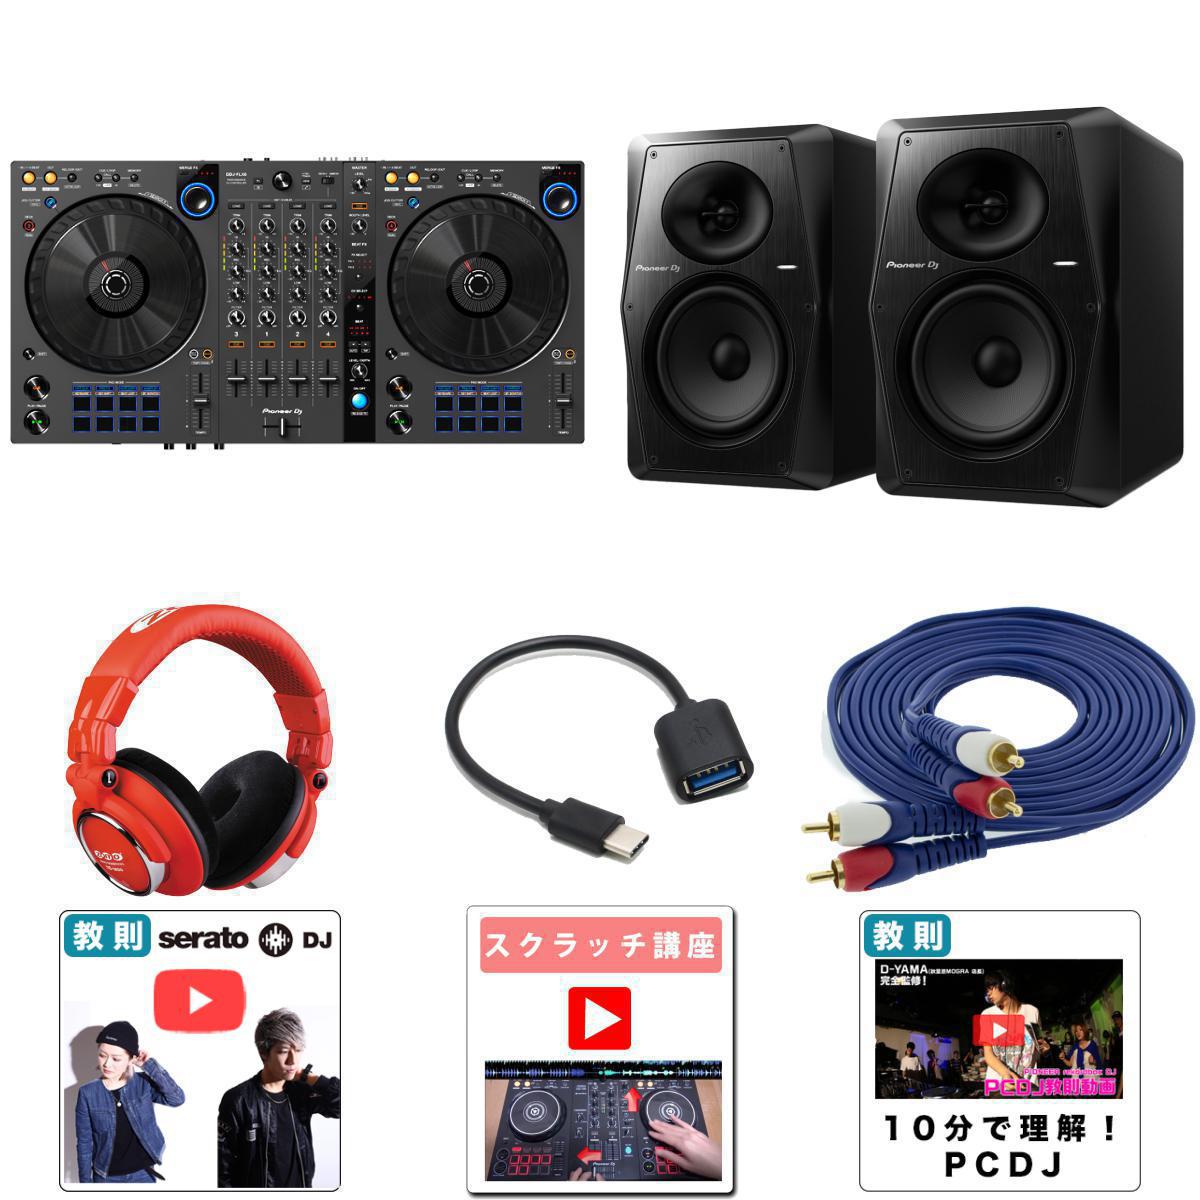 10大特典付 【高音質VM-70Pioneer DJスピーカーセット】Pioneer DJ(パイオニア) / DDJ-FLX6-GT 【rekordbox・Serato …